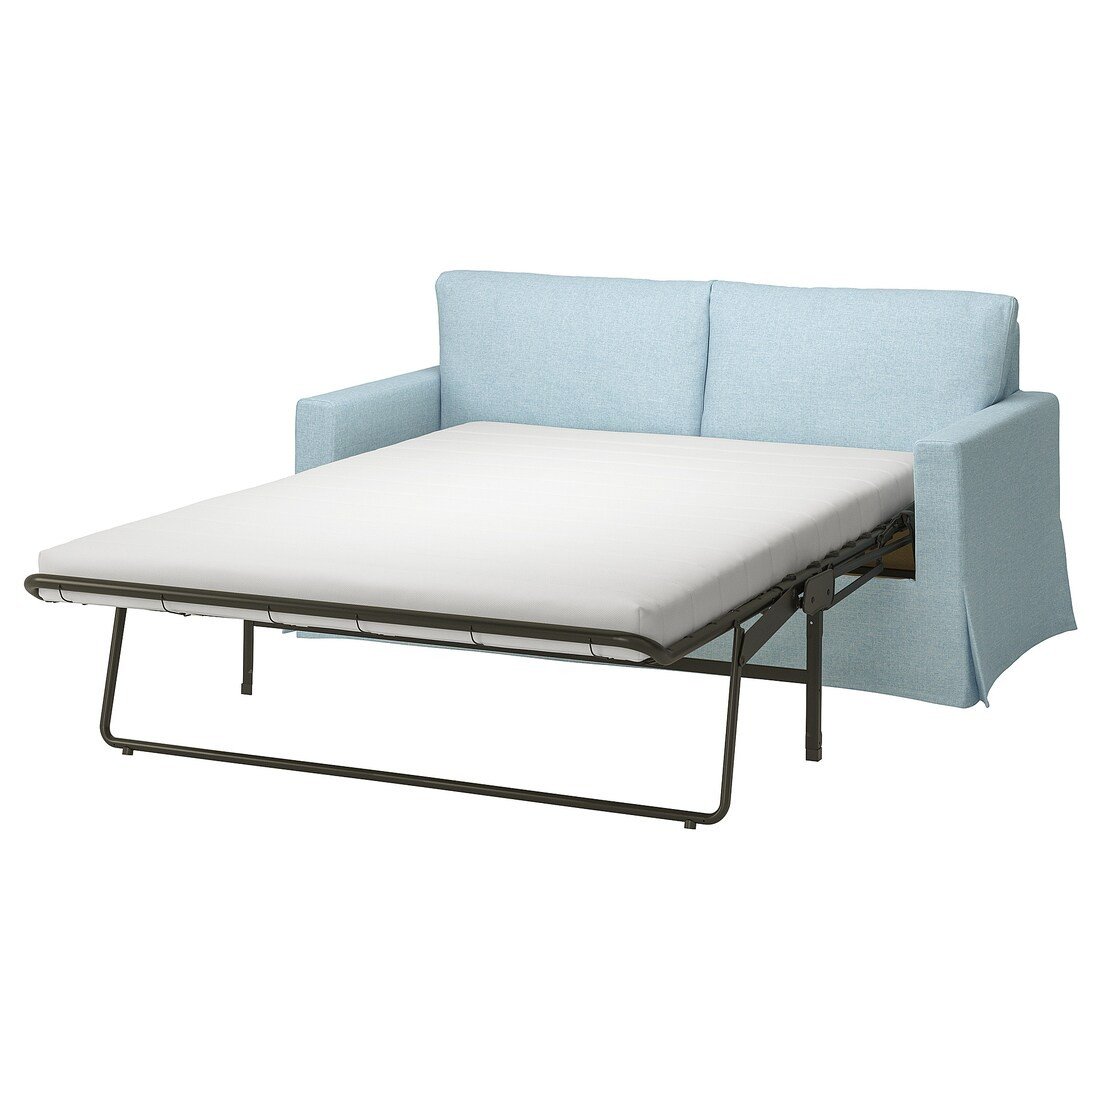 HYLTARP 2-местный диван-кровать, Киланда бледно-голубой